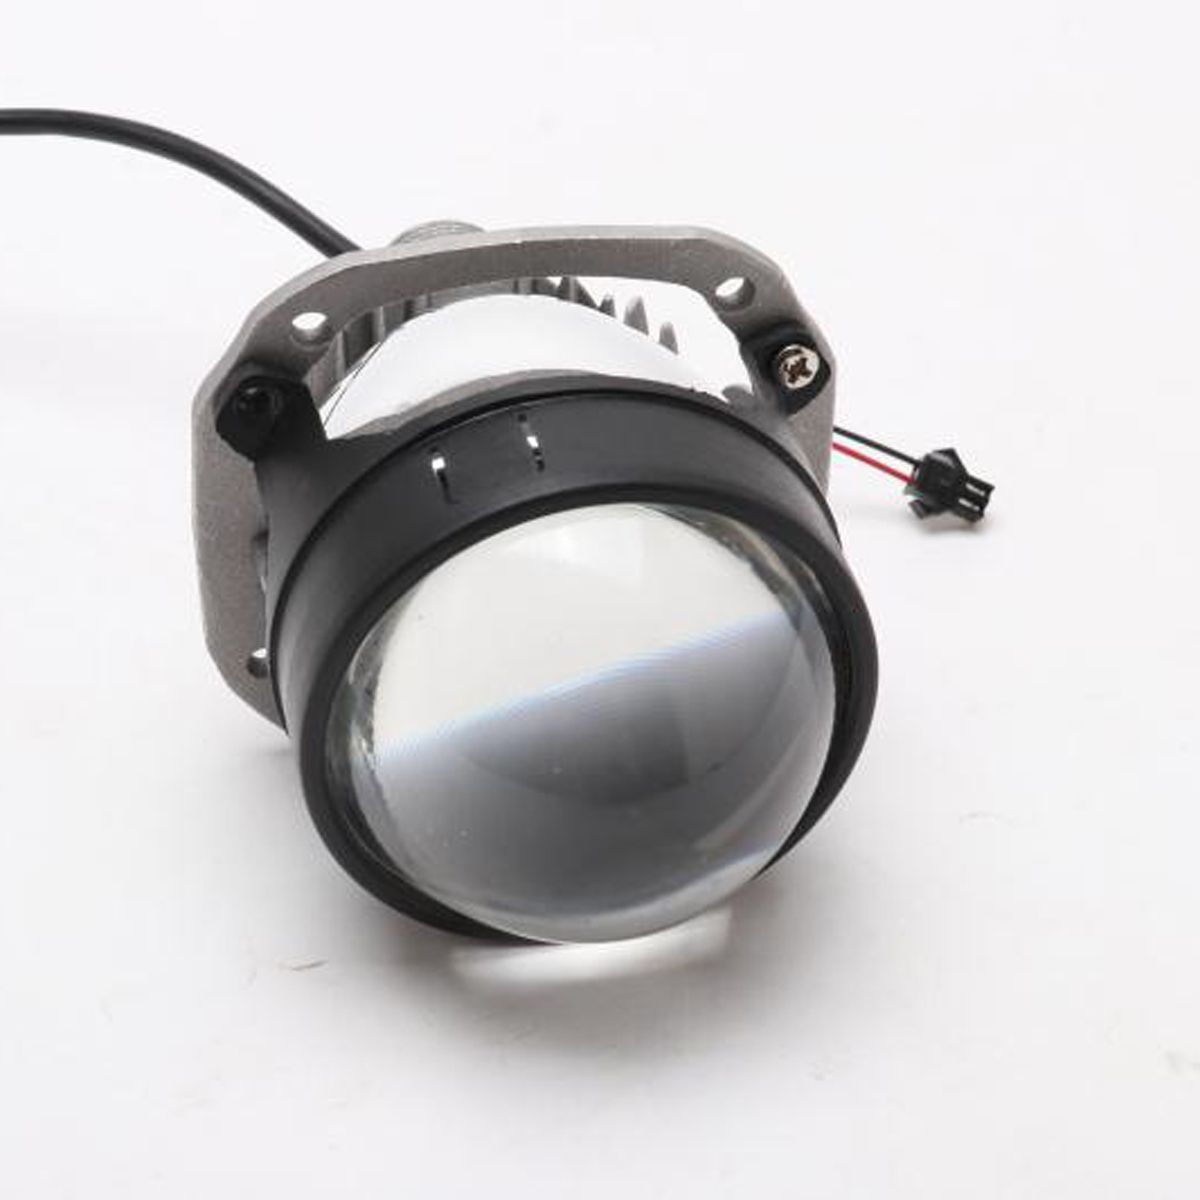 25-Inch-Car-LED-Headlights-Retrofit-H4-Projector-Lens-For-RHD-BlackSilver-HighLow-Beam-35W-3800LM-1589020